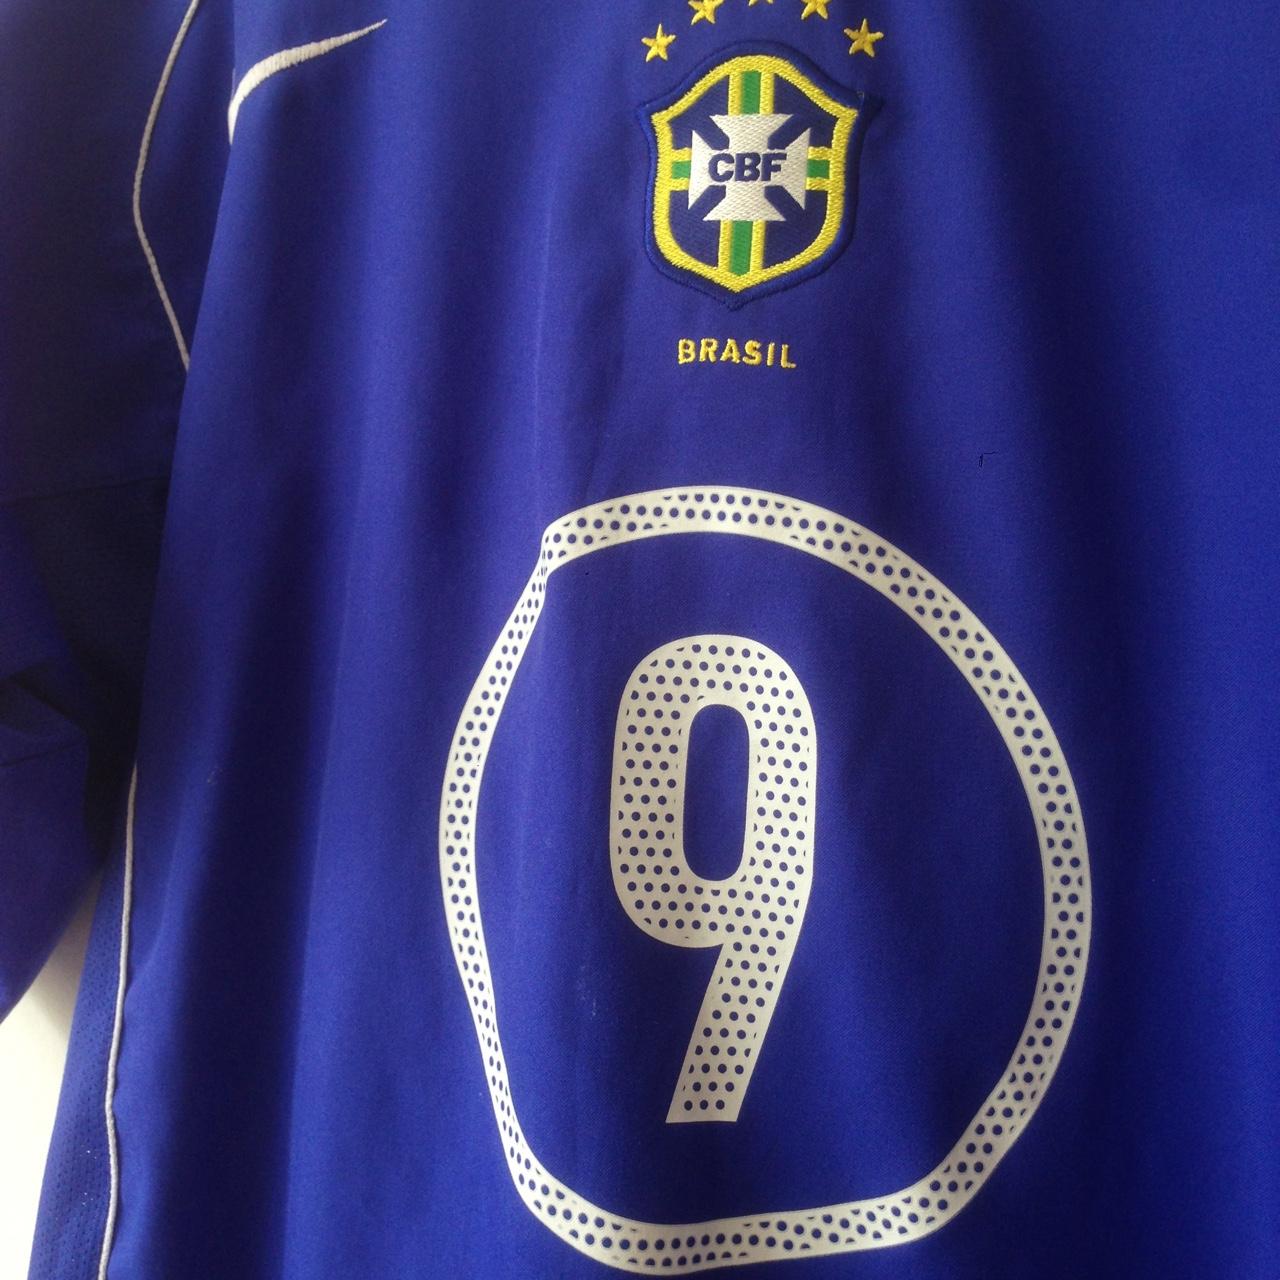 brazil 1998 away shirt